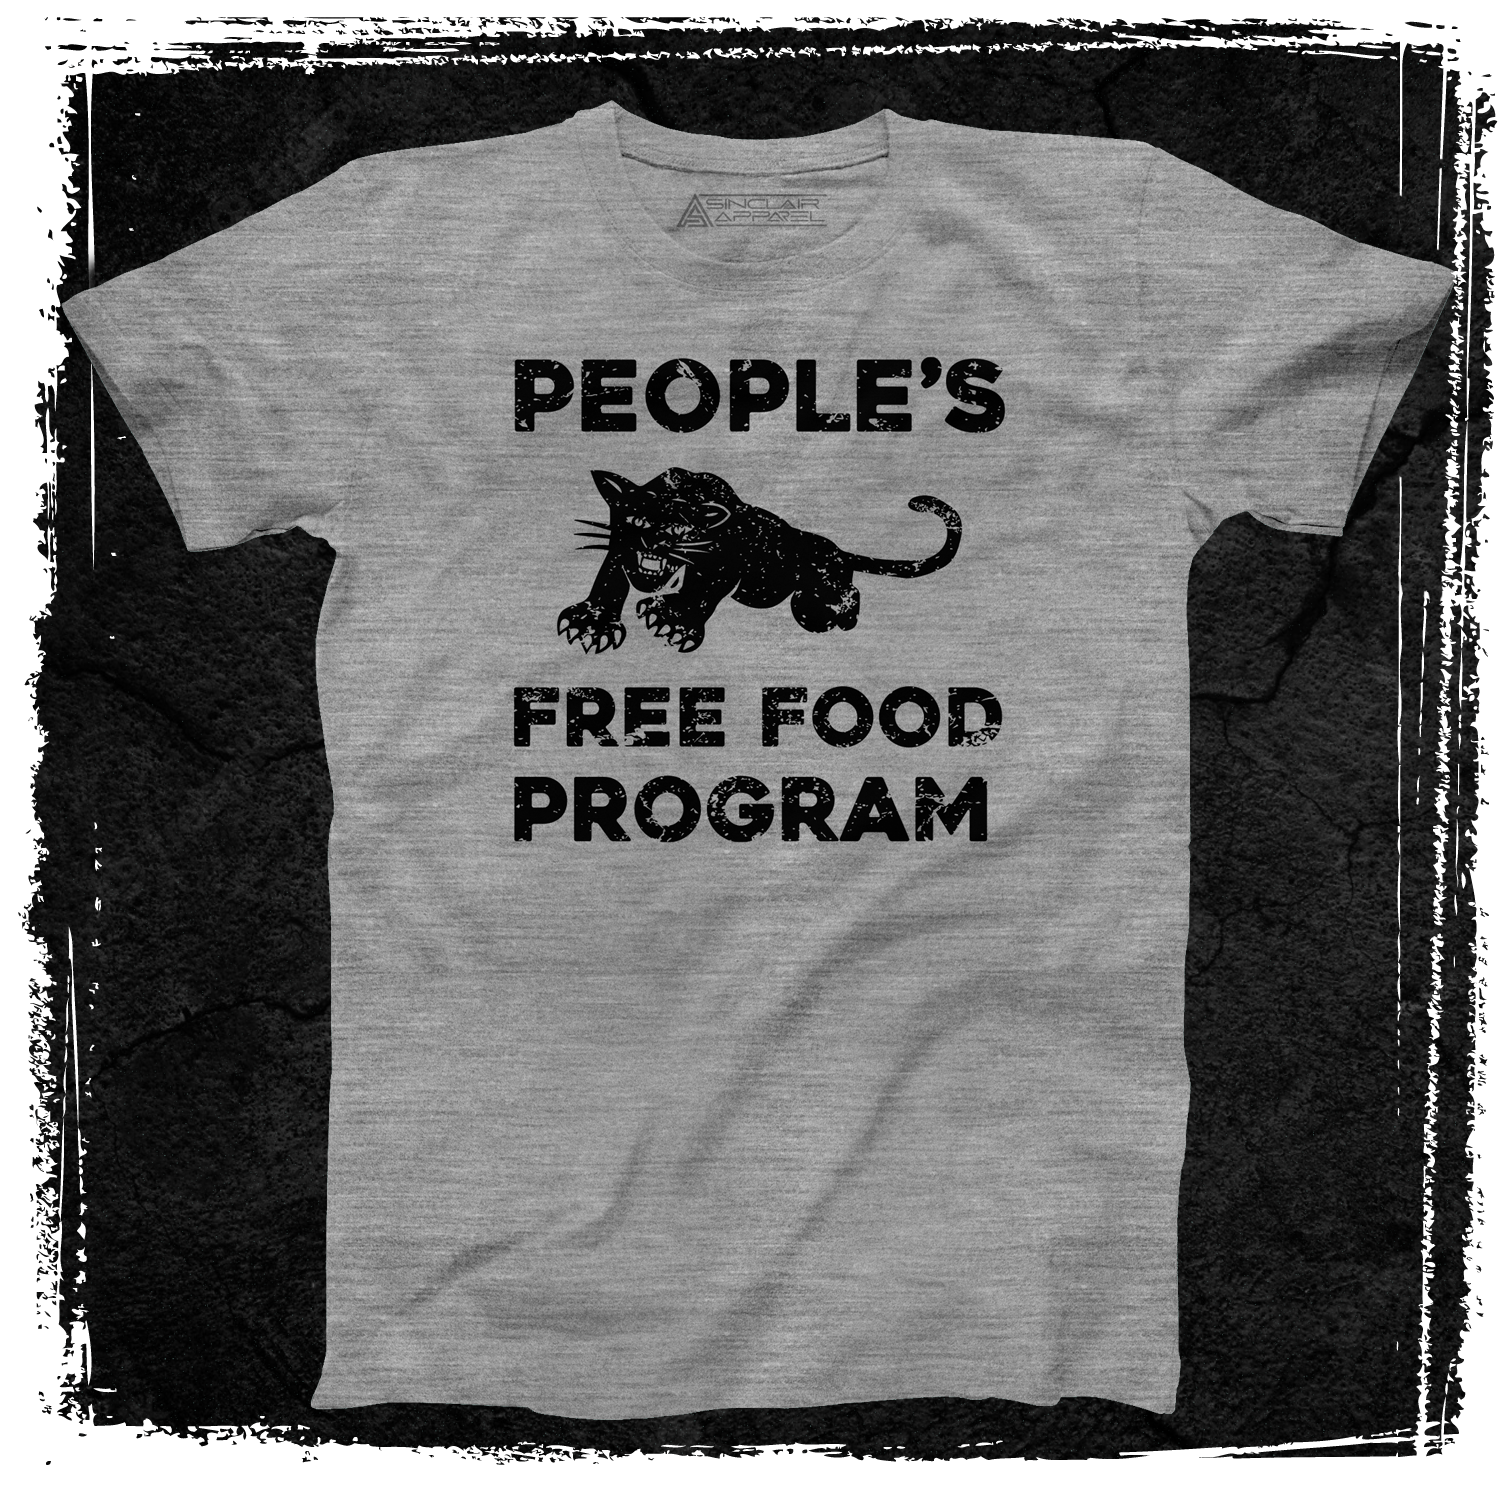 PEOPLE'S FREE FOOD PROGRAM